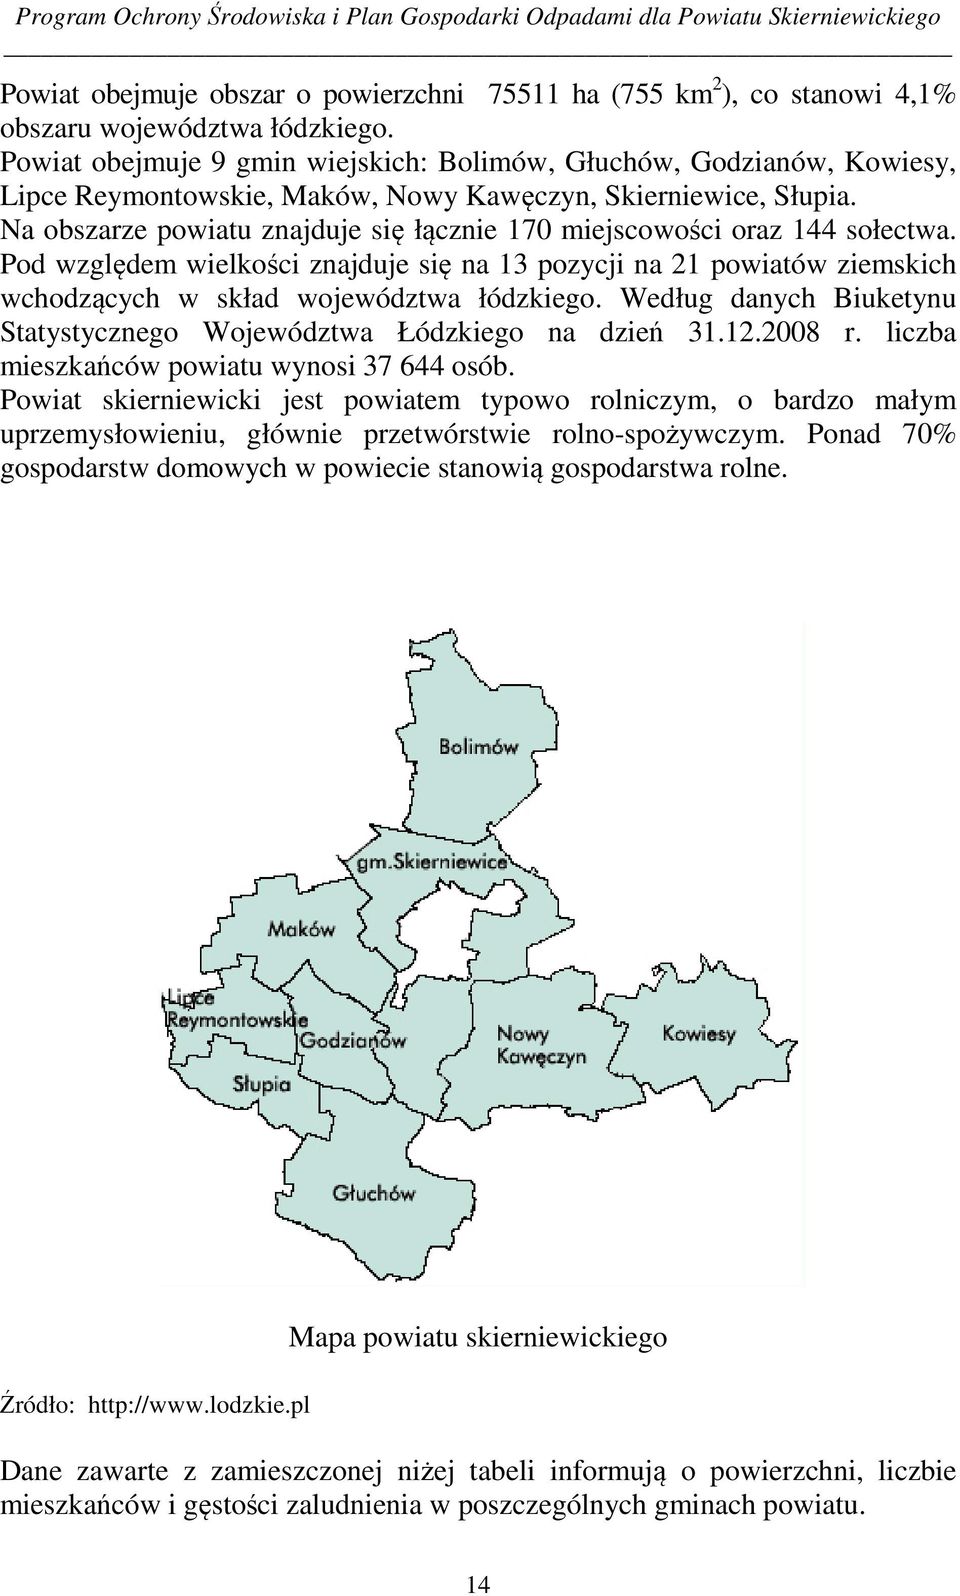 Na obszarze powiatu znajduje się łącznie 170 miejscowości oraz 144 sołectwa. Pod względem wielkości znajduje się na 13 pozycji na 21 powiatów ziemskich wchodzących w skład województwa łódzkiego.